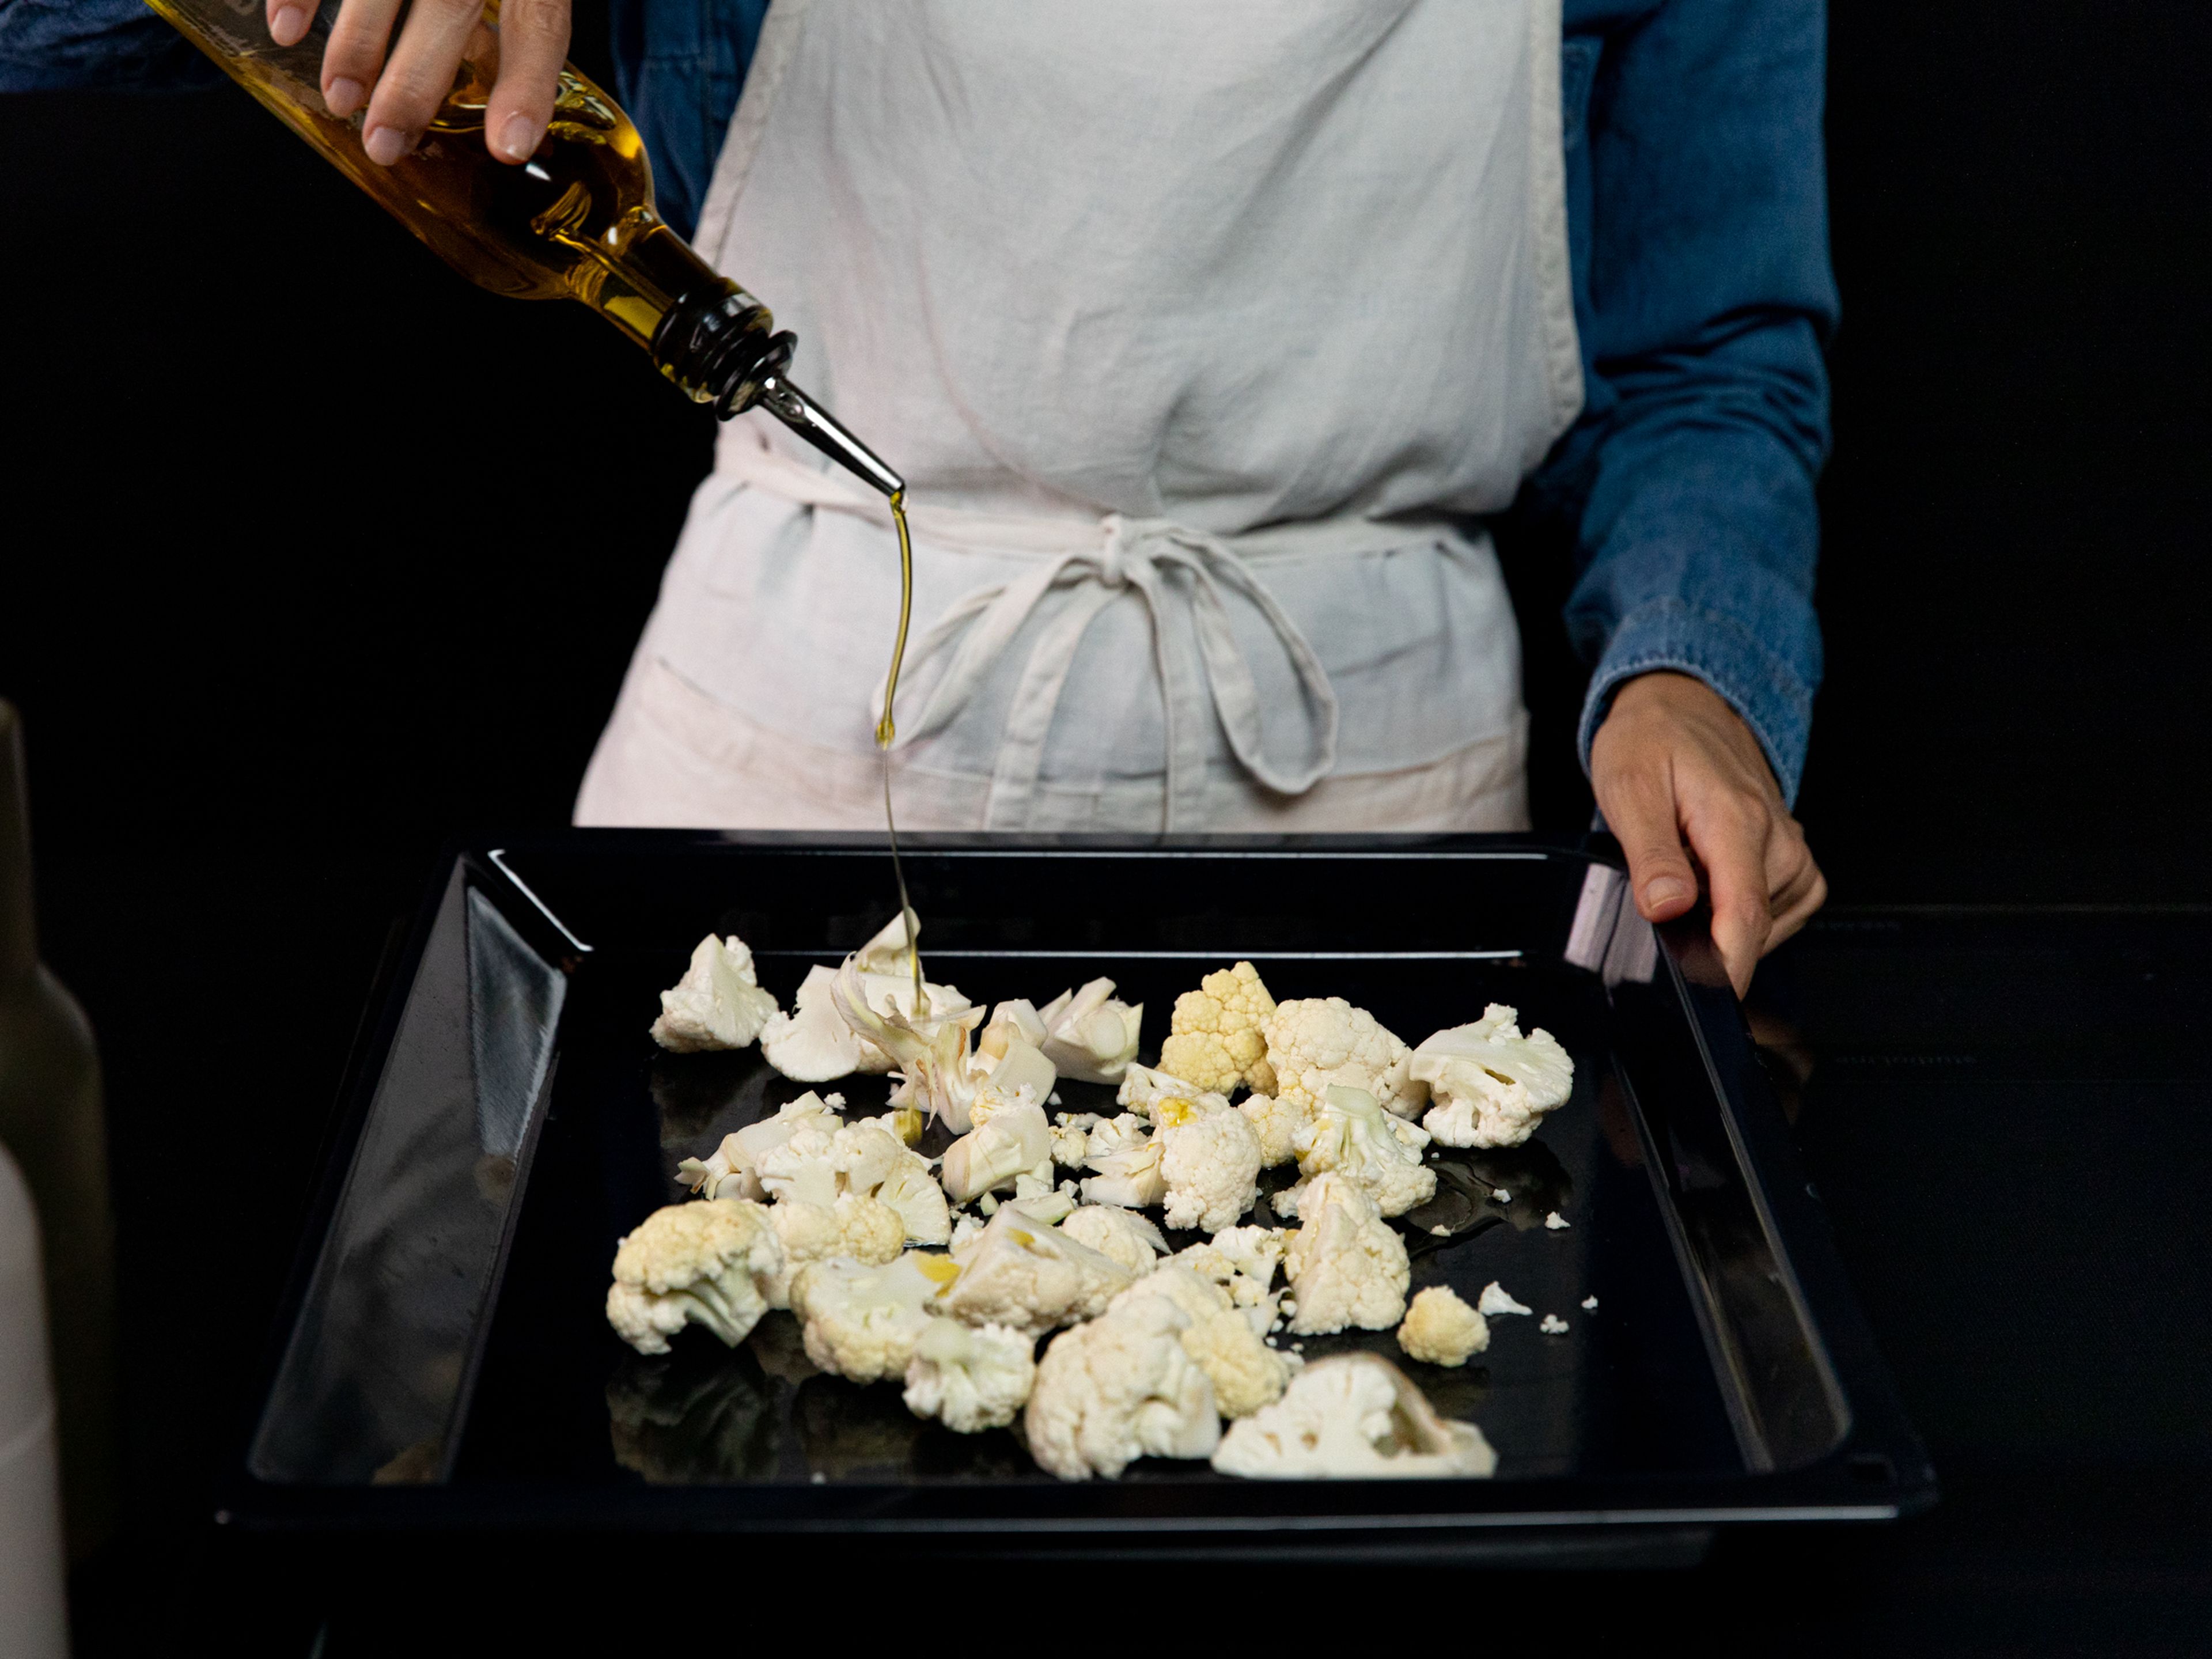 Blumenkohlröschen auf einem Backblech verteilen und mit Olivenöl beträufeln. Mit Salz und Pfeffer würzen und bei 200°C ca. 18 Min. backen, bis der Blumenkohl innen gar und außen gebräunt ist.